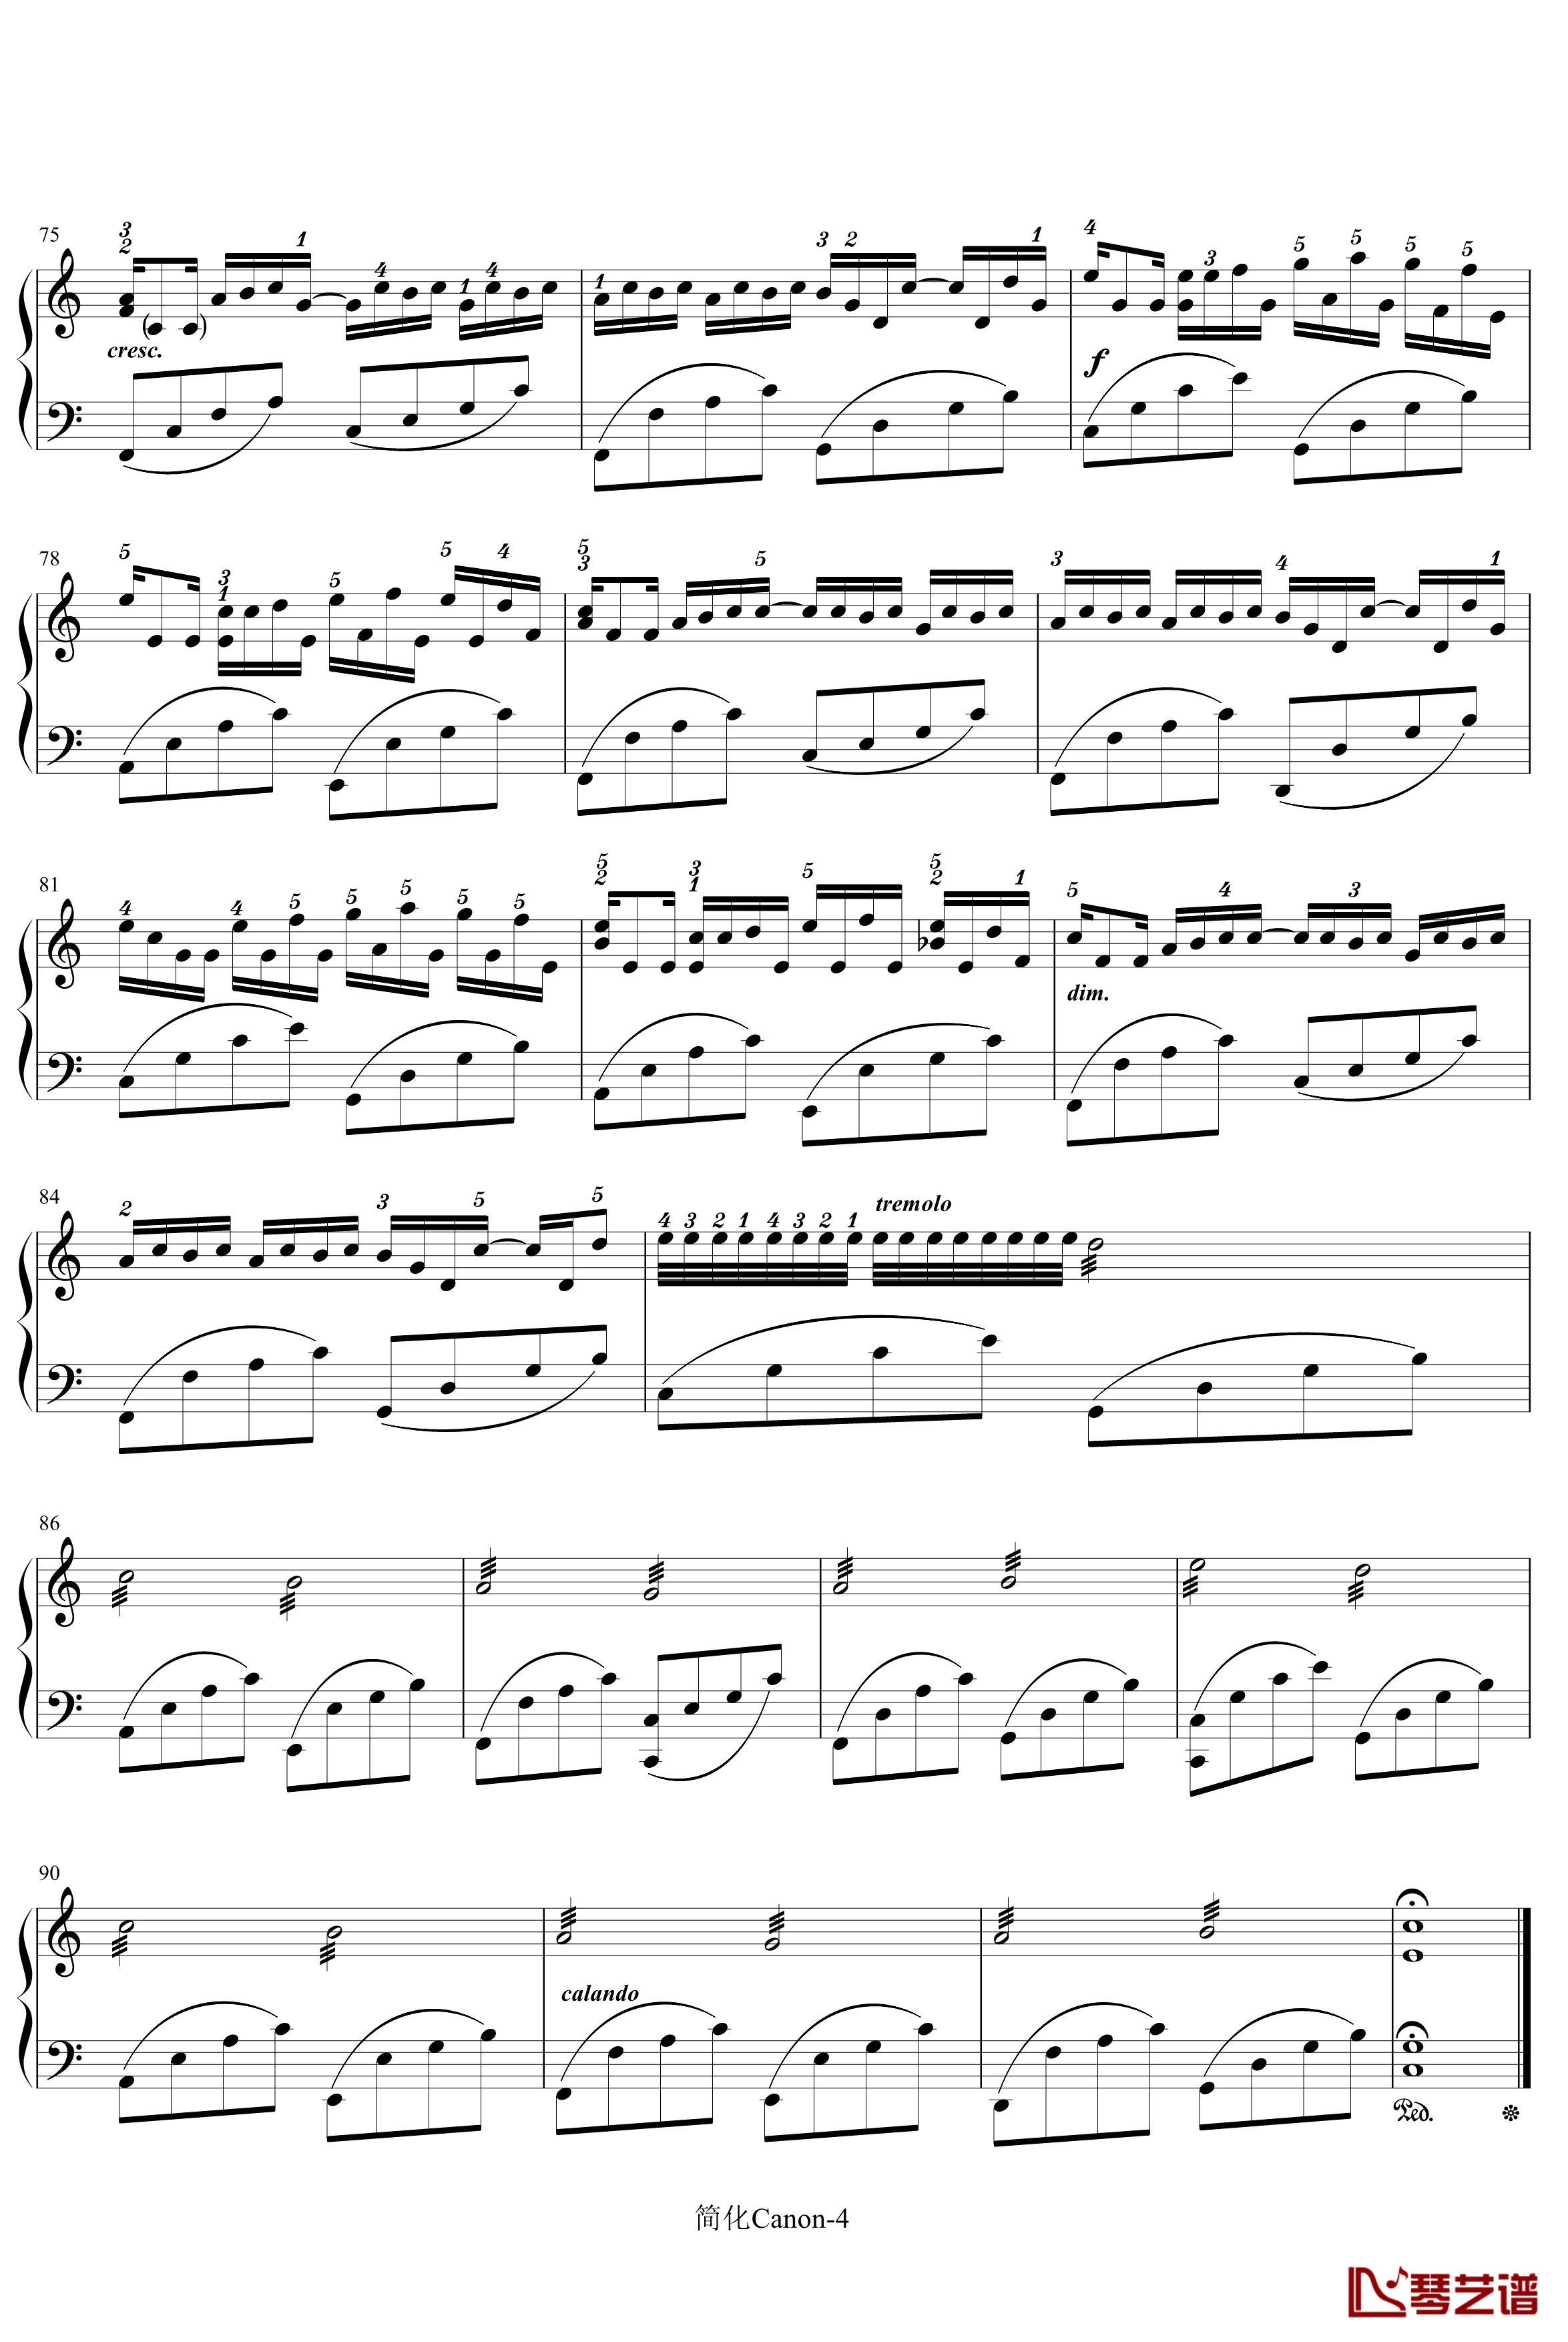 卡农-寒风钢琴谱-简化版-帕赫贝尔-Pachelbel4